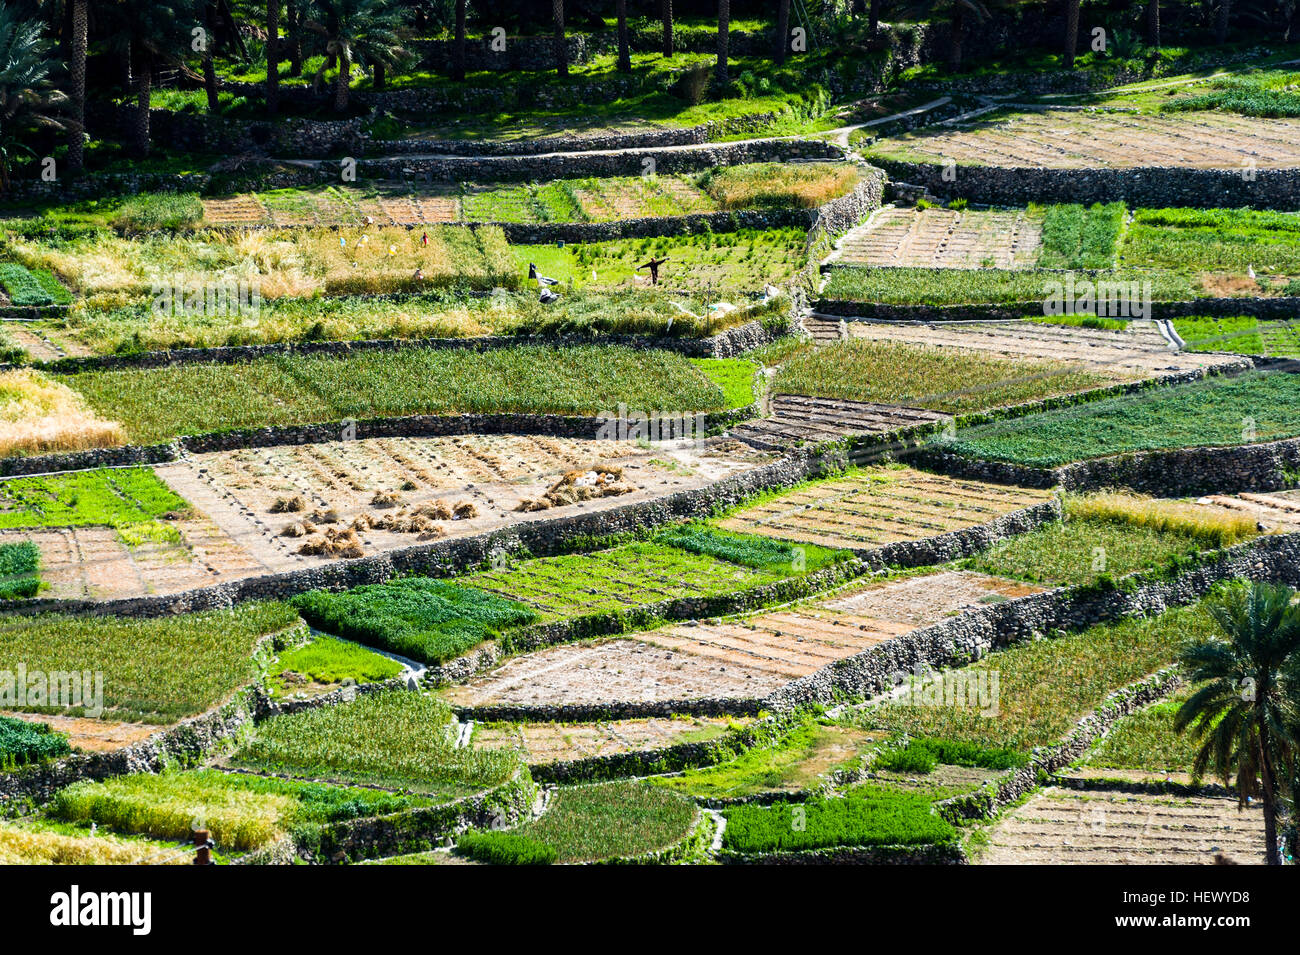 Bewässerten terrassenförmig angelegten landwirtschaftlichen Kulturpflanzen wachsen Knoblauch, füttern Sie Zwiebeln und Tier auf der Piste von einem einsamen Bergtal. Stockfoto